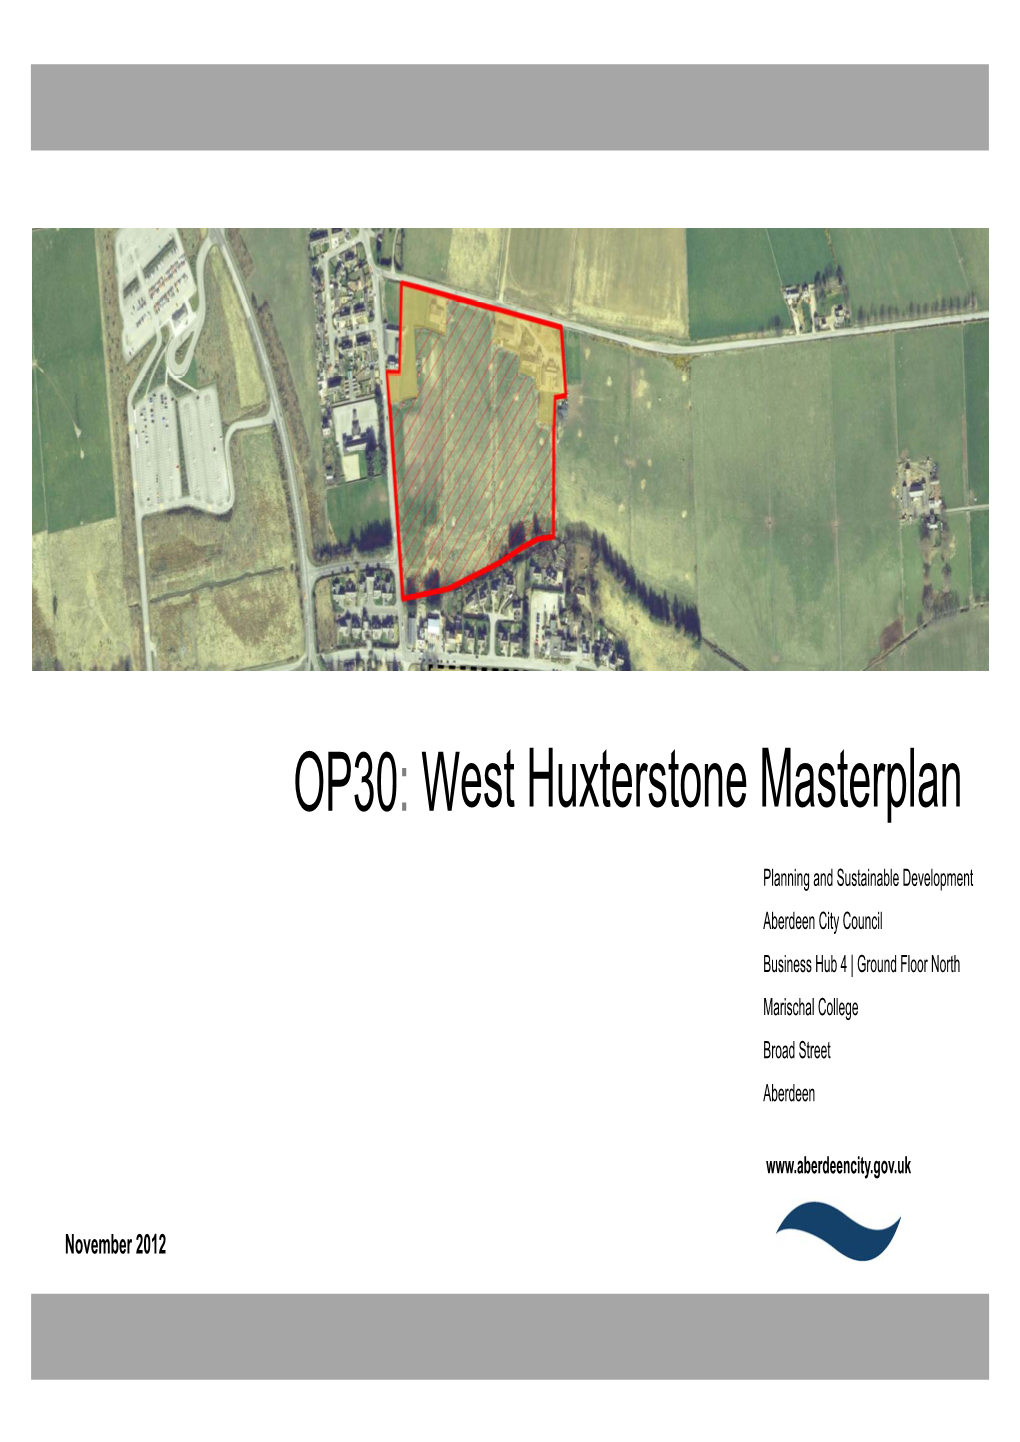 West Huxterstone Masterplan